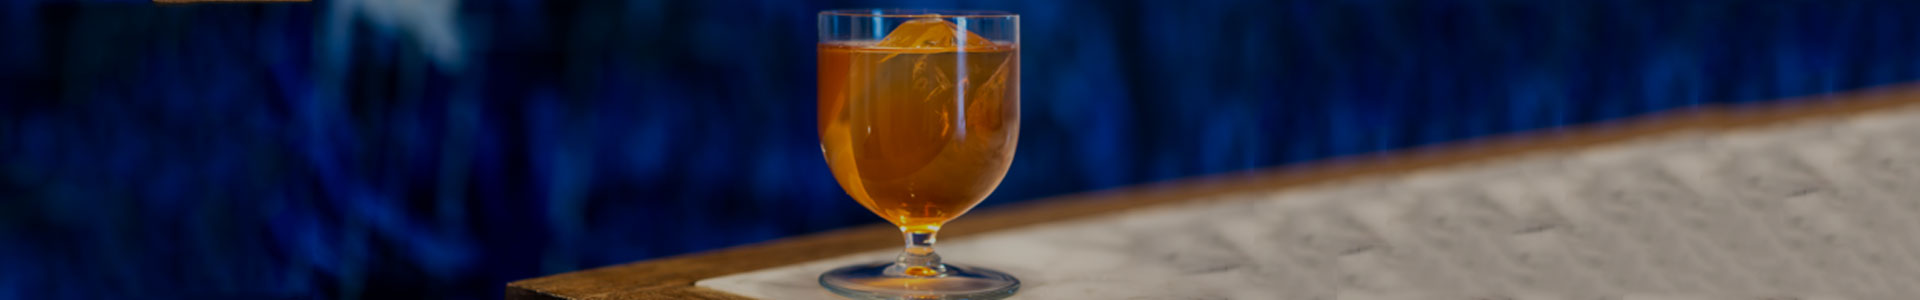 Libbey Levitas Cocktailglas mit orangenem Drink auf einem Tisch.